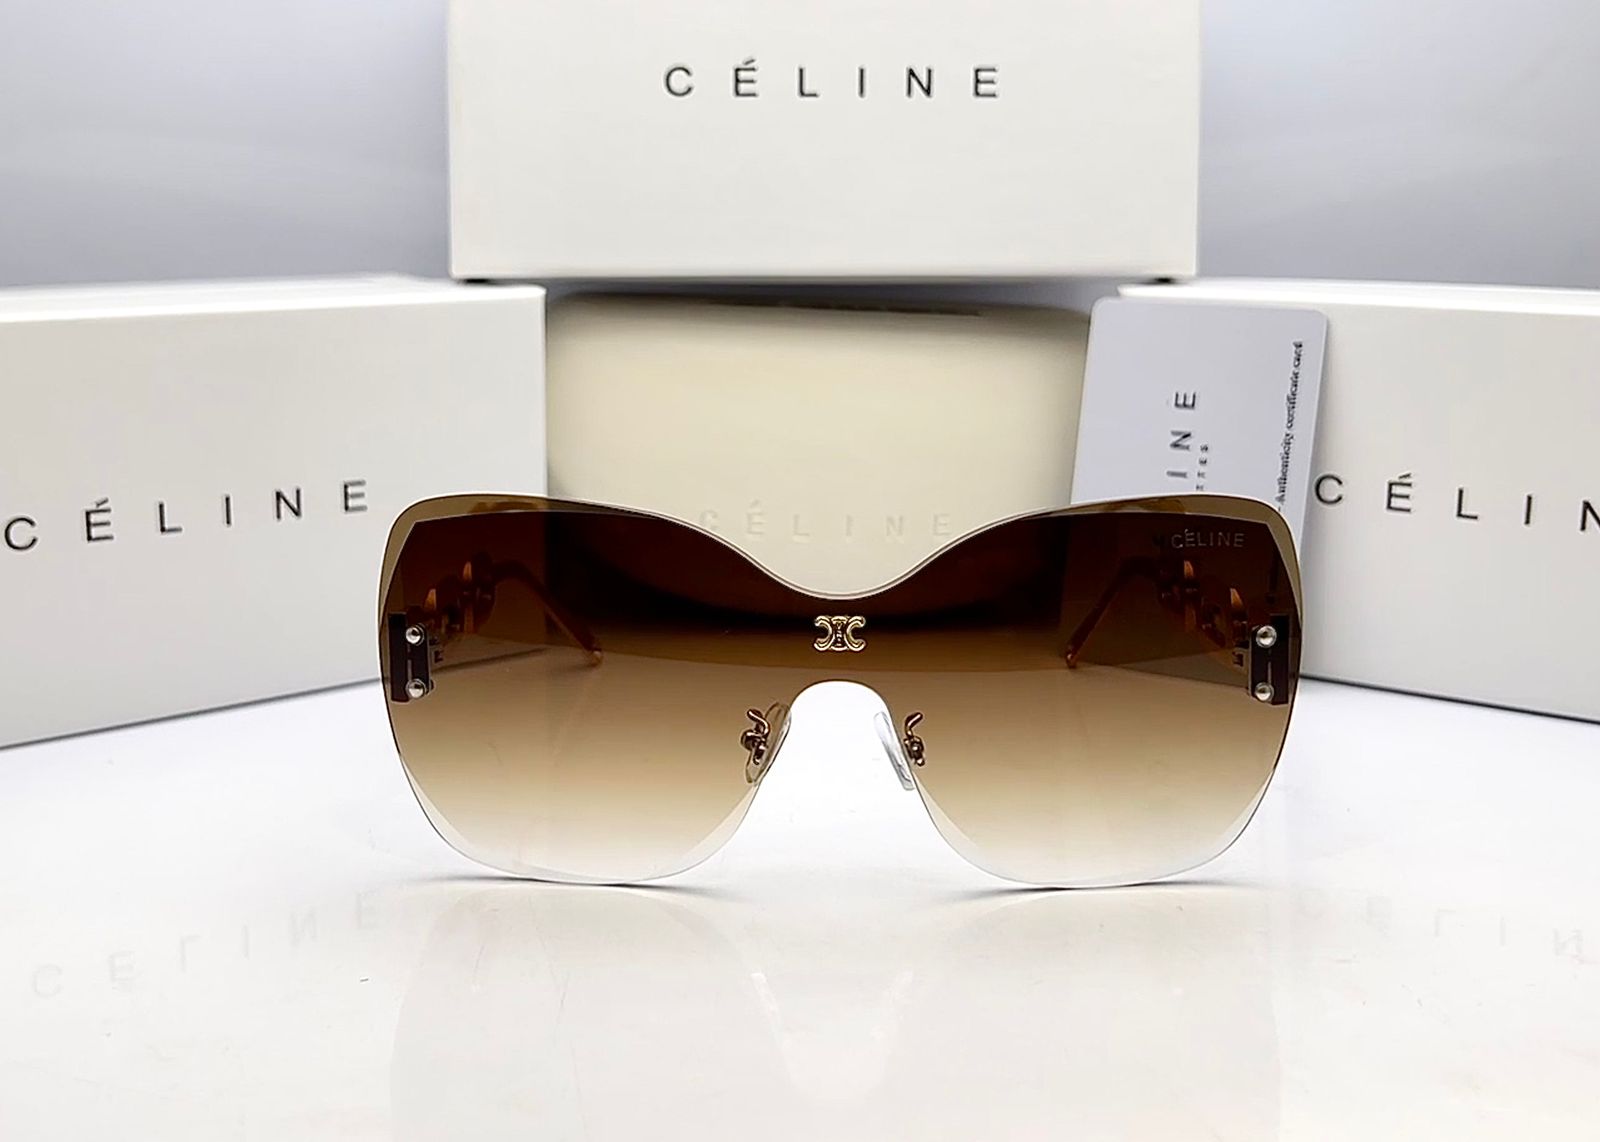 Celine Sunglasses Price in Pakistan - Finalprice.pk